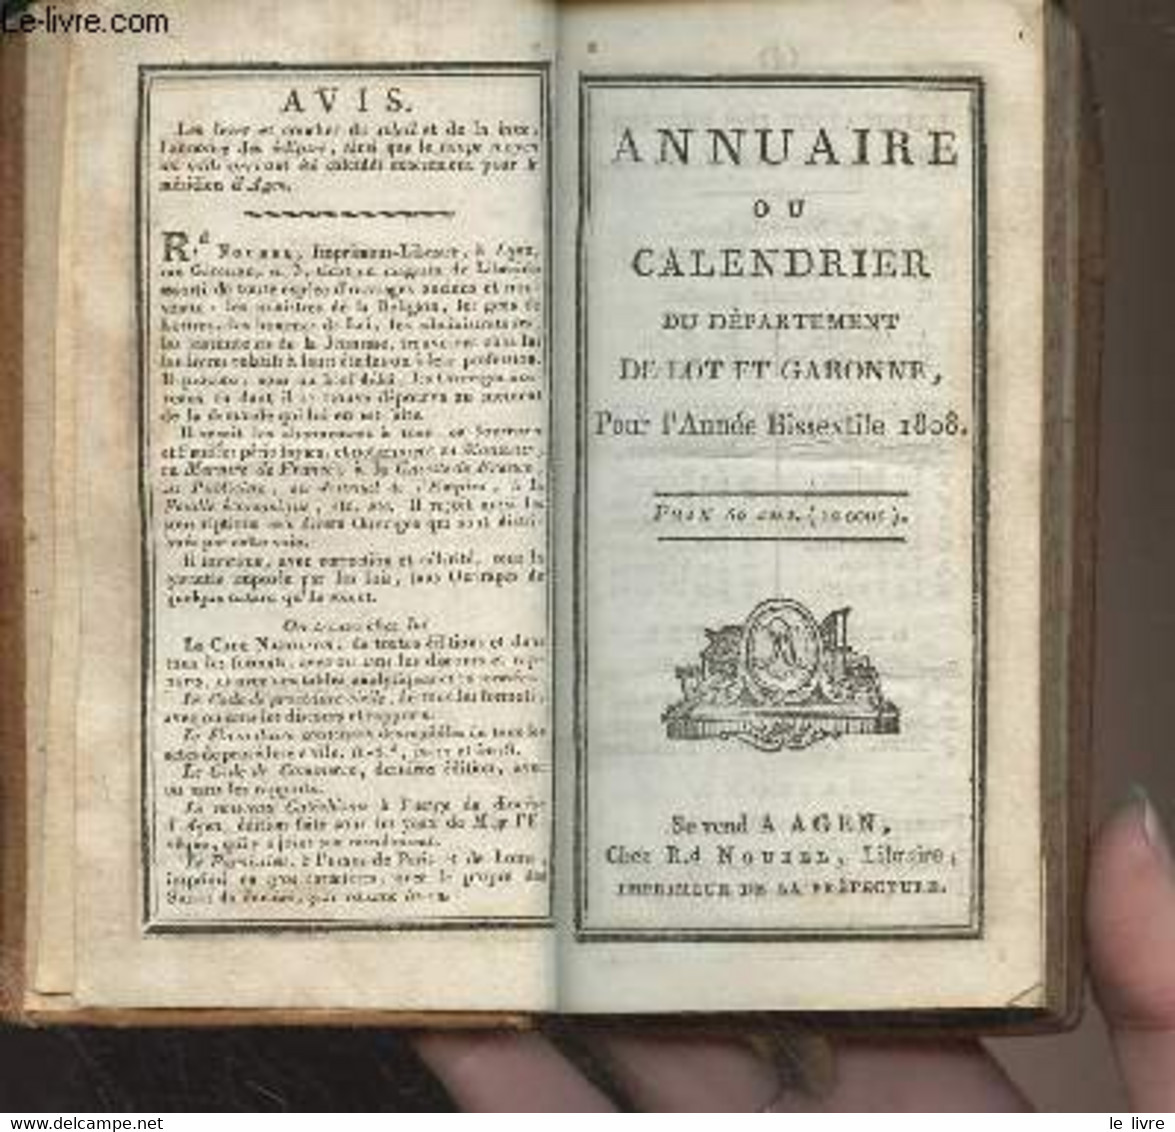 Annuaire Ou Calendrier Du Département De Lot Et Garonne Pour L'année Bissextile 1808 - Collectif - 1808 - Agenda & Kalender